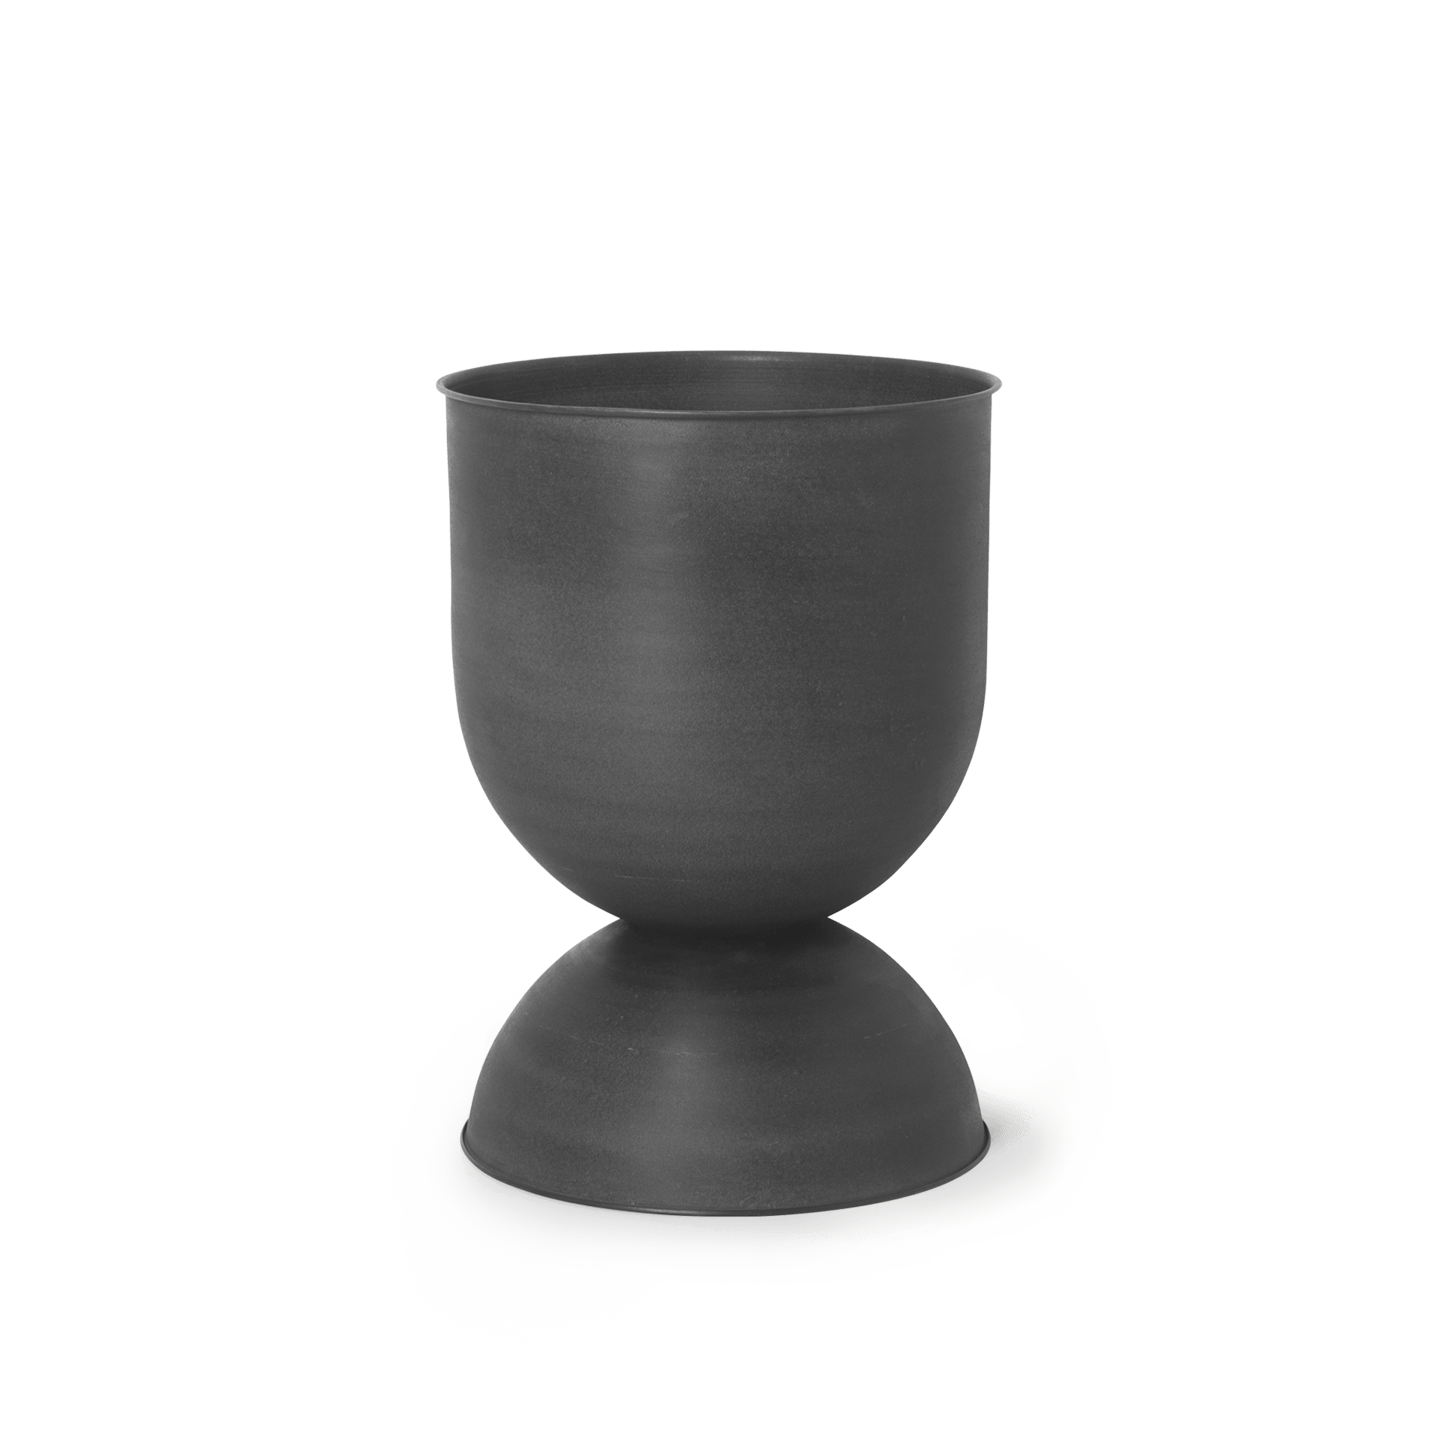 Ferm - Hourglass Pot - Medium - Black/D. GreyFermFerm - Marz DesignsFerm Living